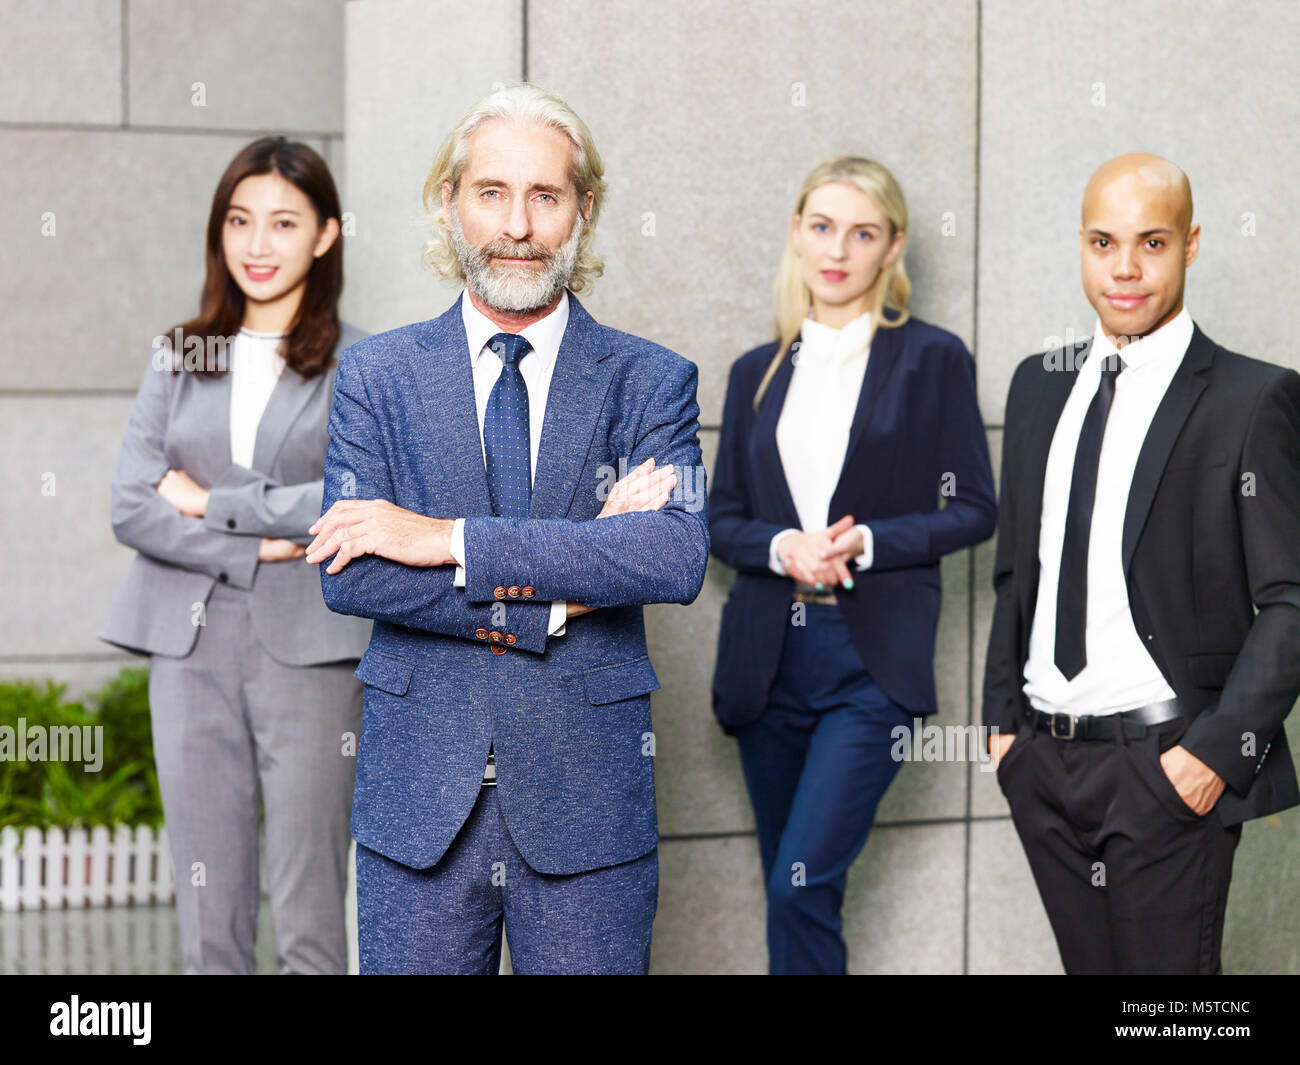 Porträt von einem Team von multinationalen und multiethnischen corporate business Menschen. Stockfoto